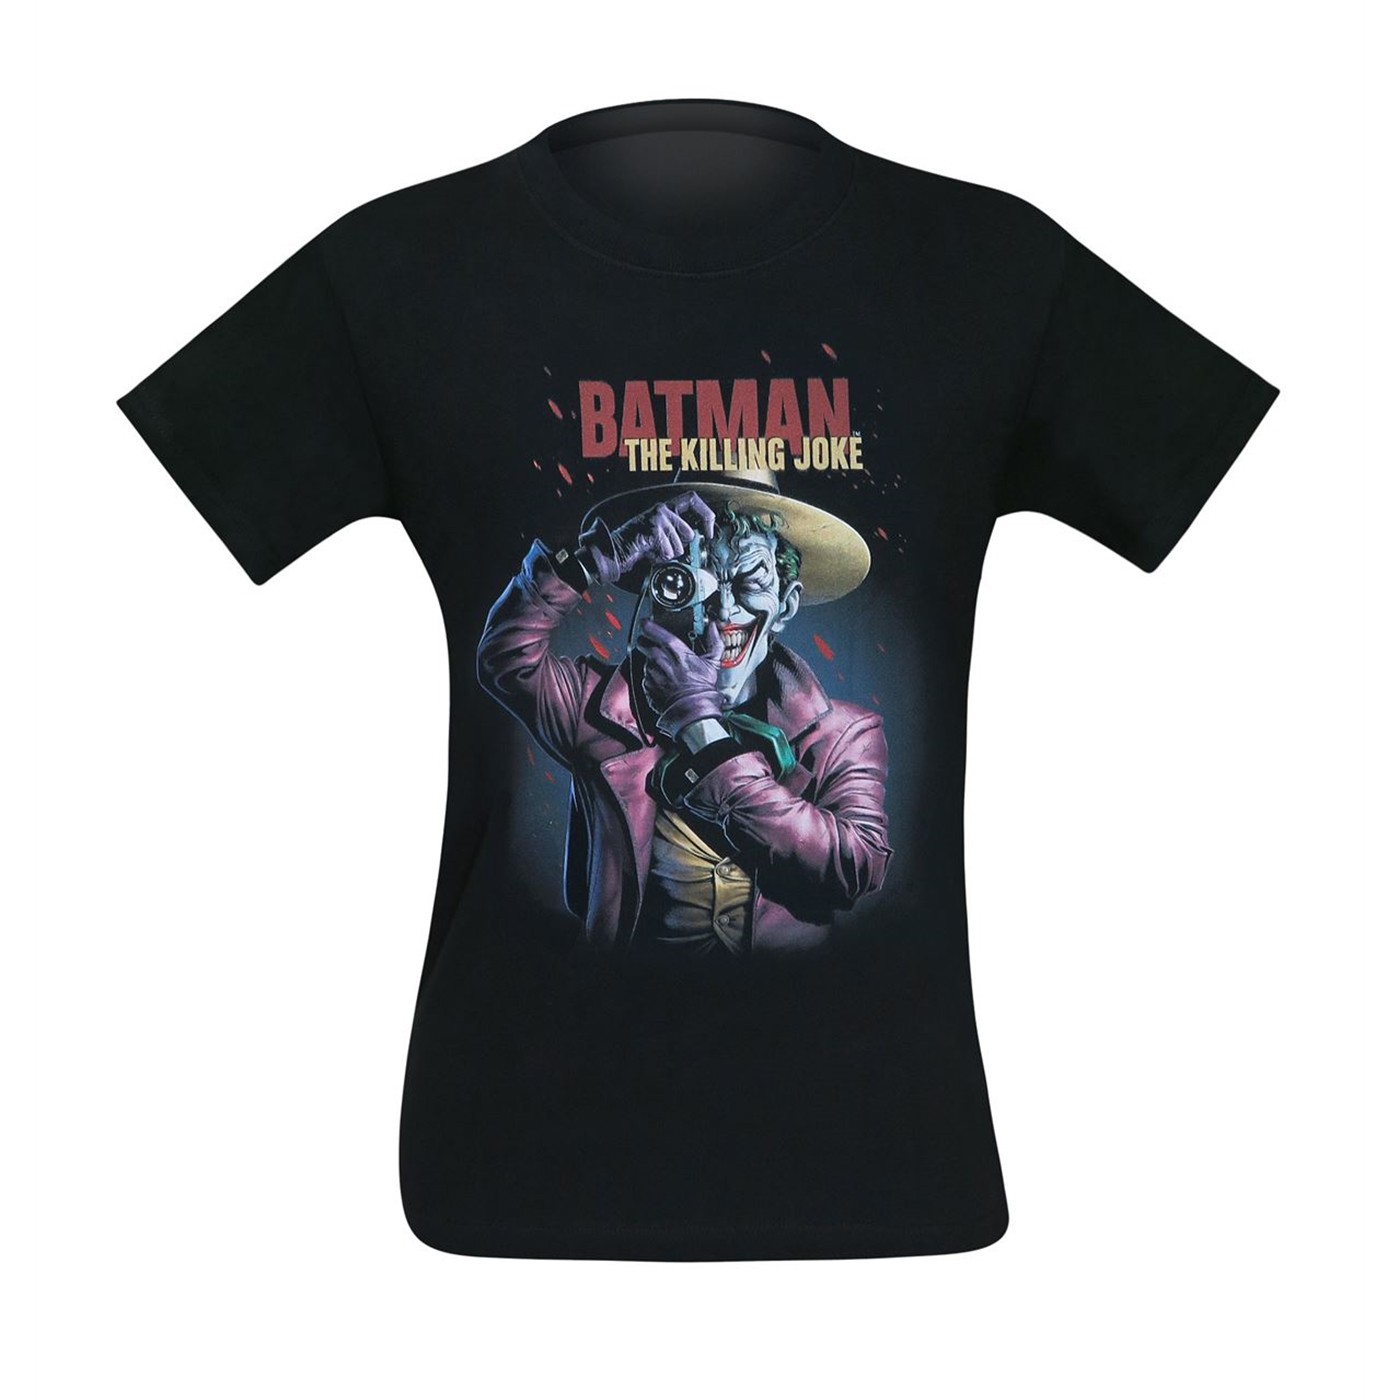 The Joker The Killing Joke Smile Poster Men's T-Shirt